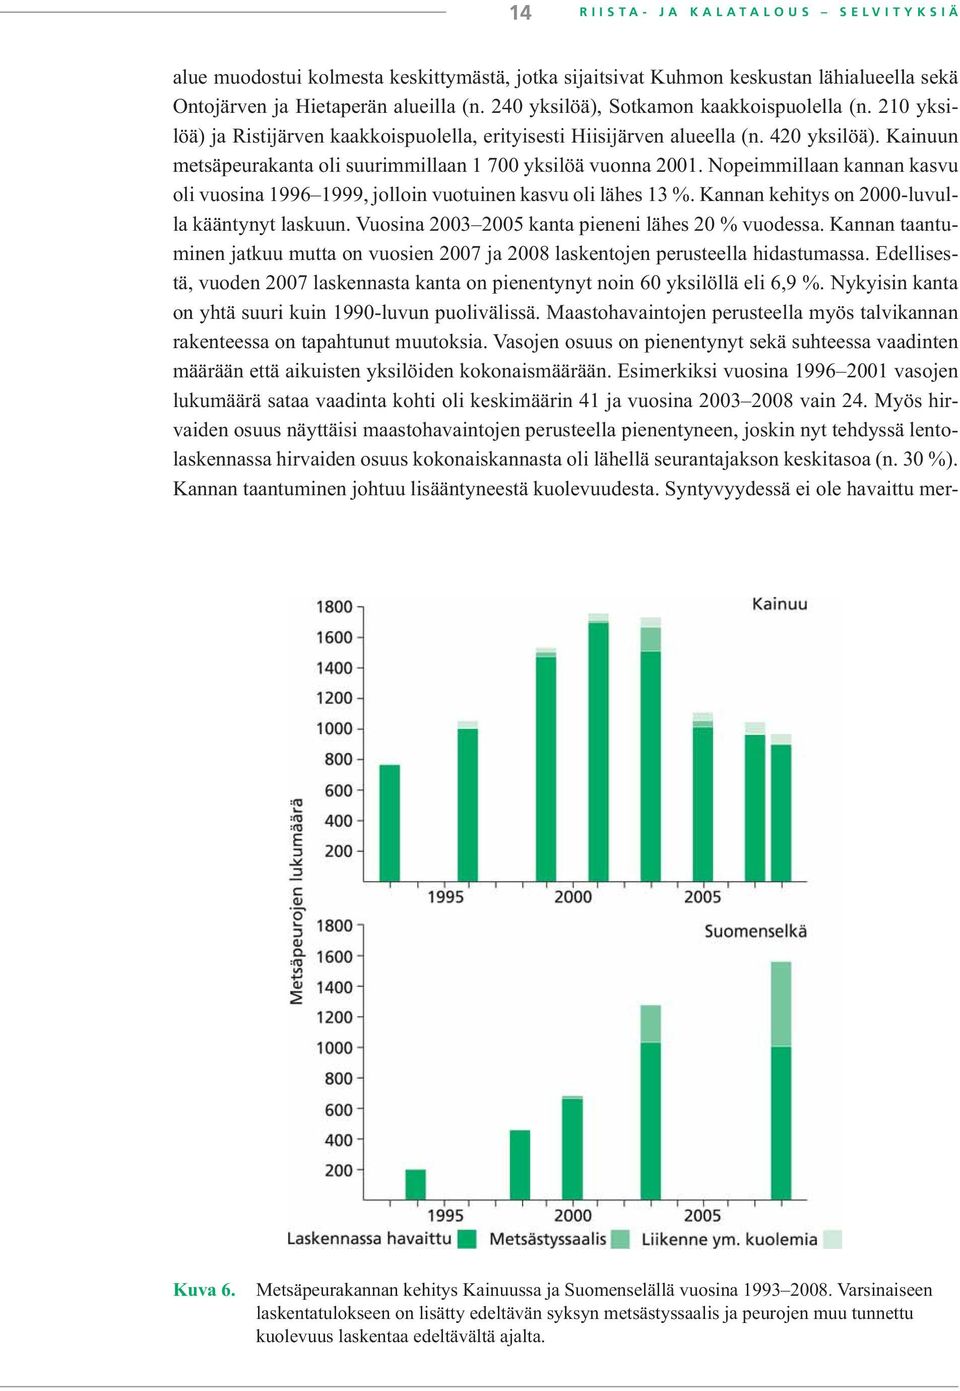 Kainuun metsäpeurakanta oli suurimmillaan 1 700 yksilöä vuonna 2001. Nopeimmillaan kannan kasvu oli vuosina 1996 1999, jolloin vuotuinen kasvu oli lähes 13 %.